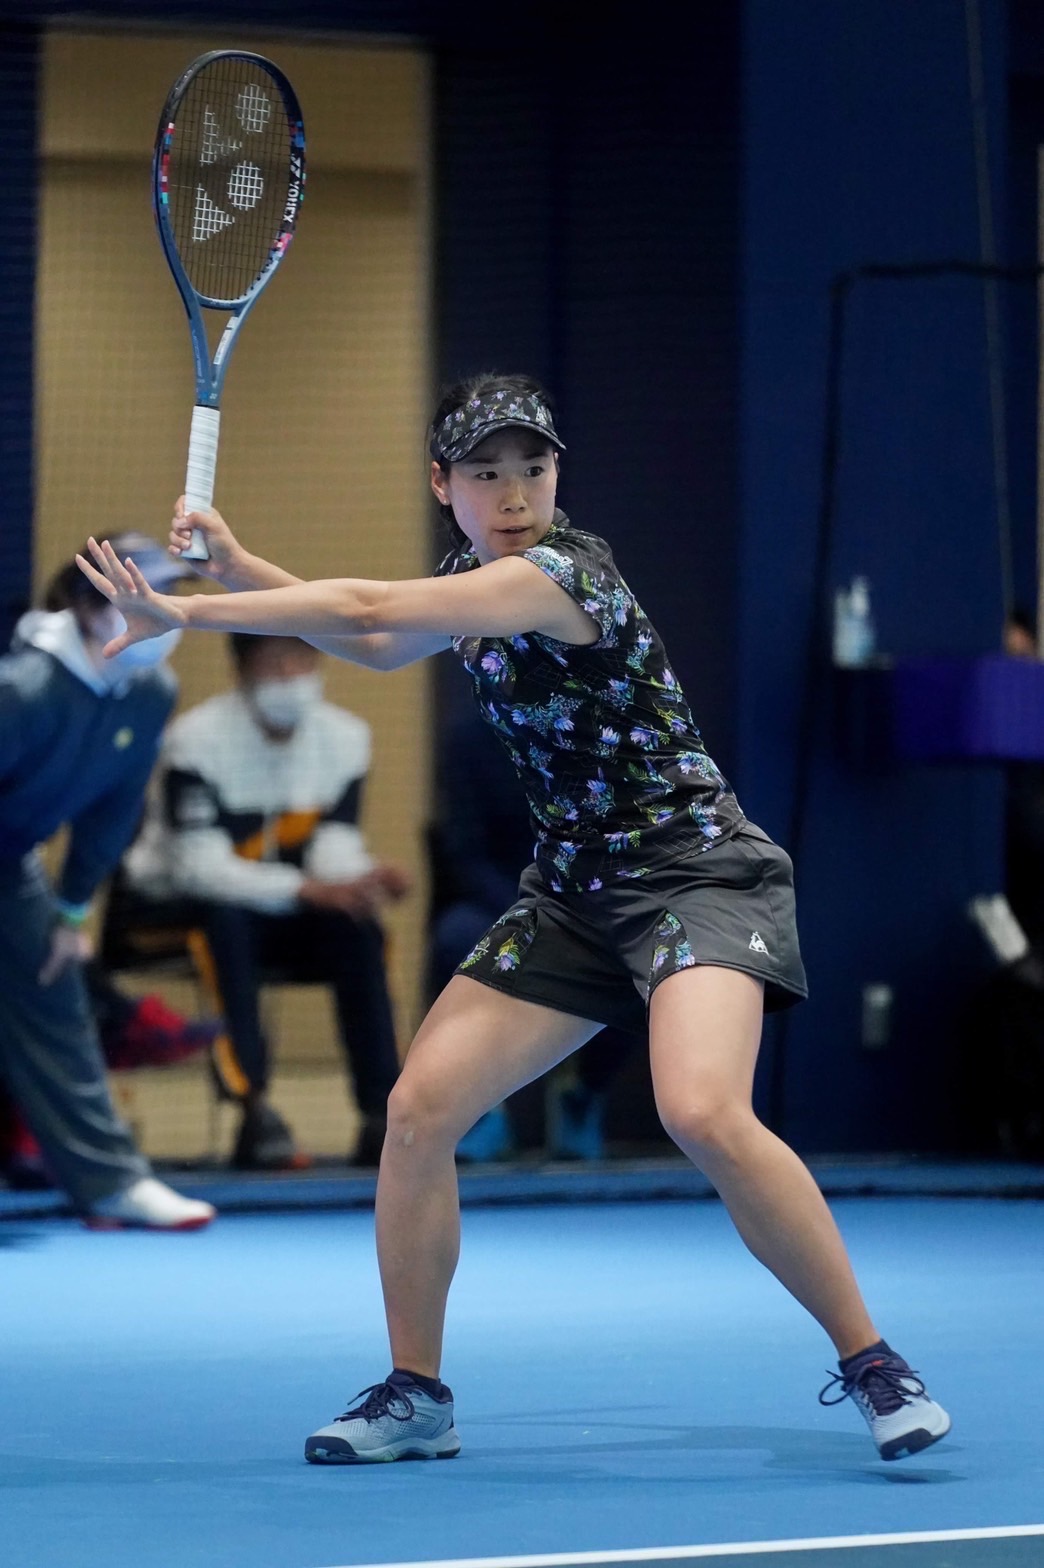 Professional tennis player Nao Hibi